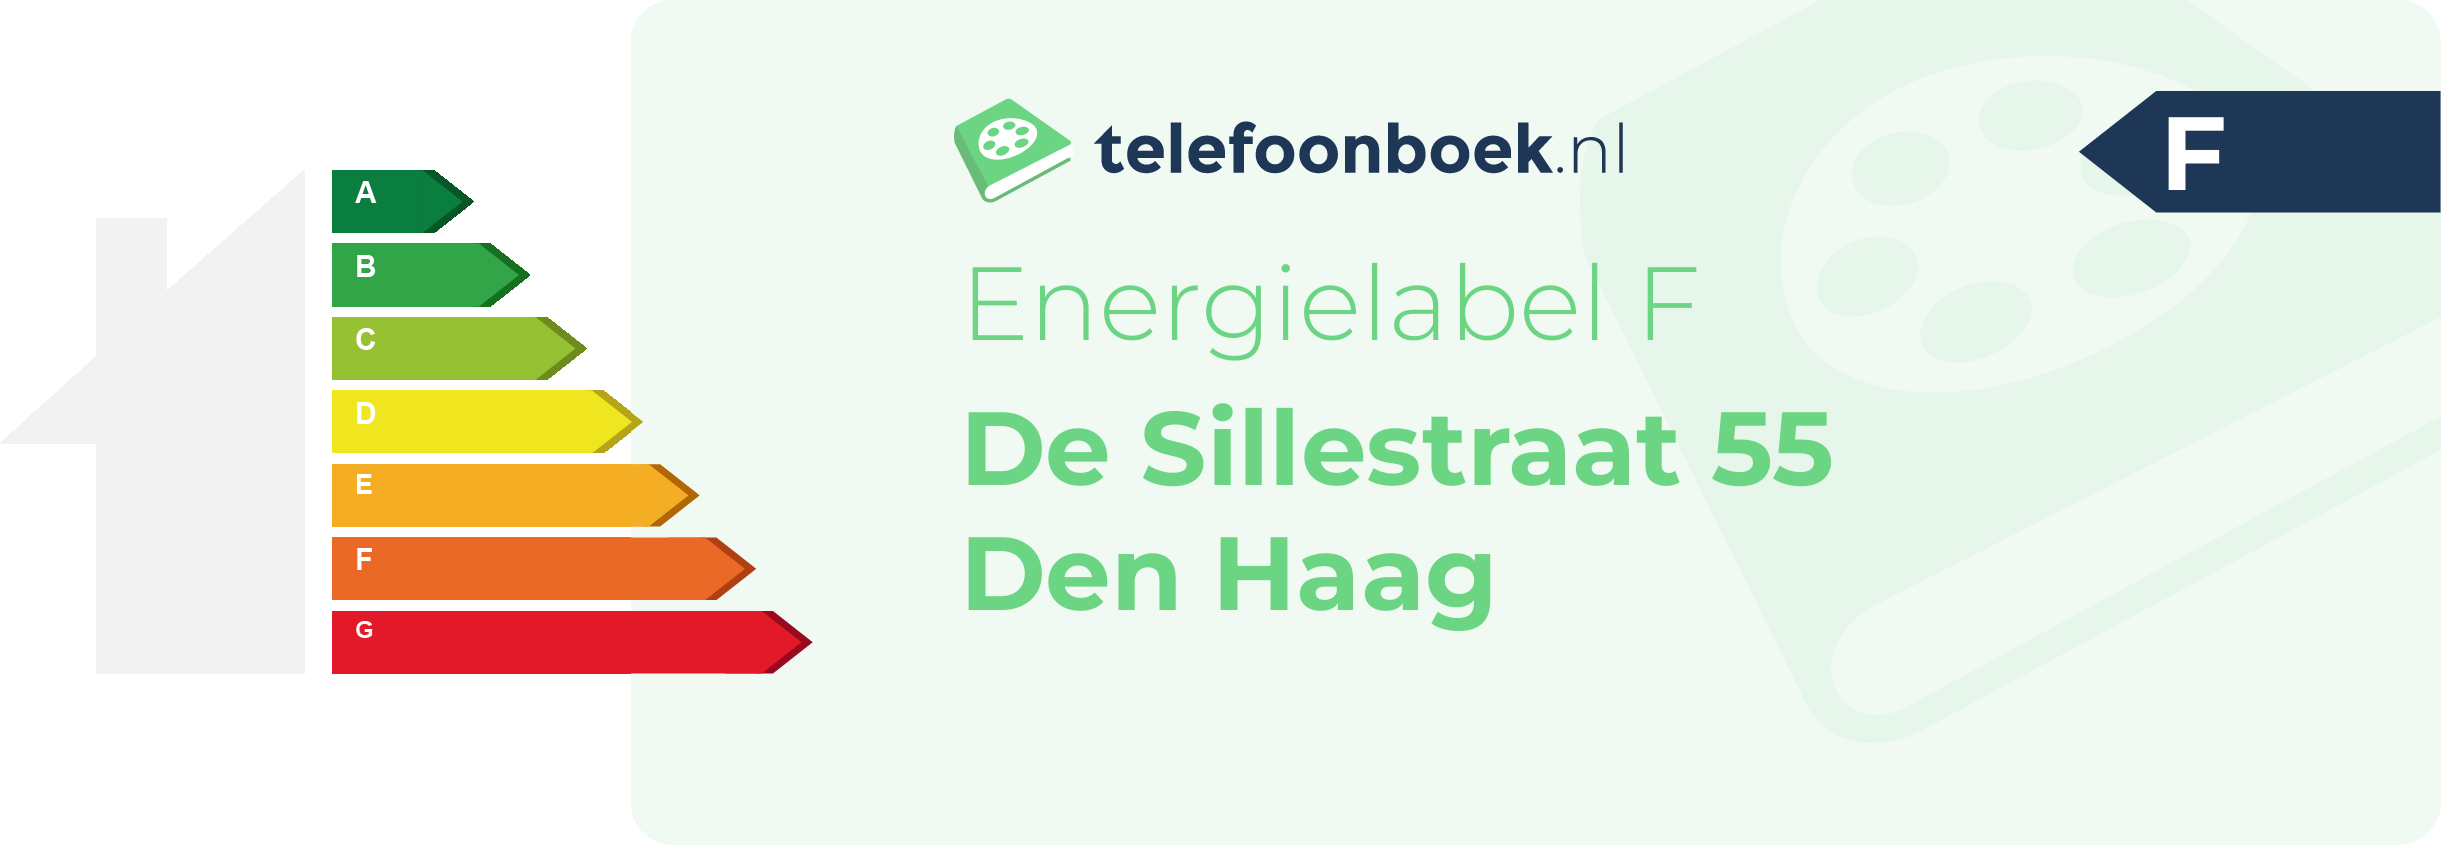 Energielabel De Sillestraat 55 Den Haag